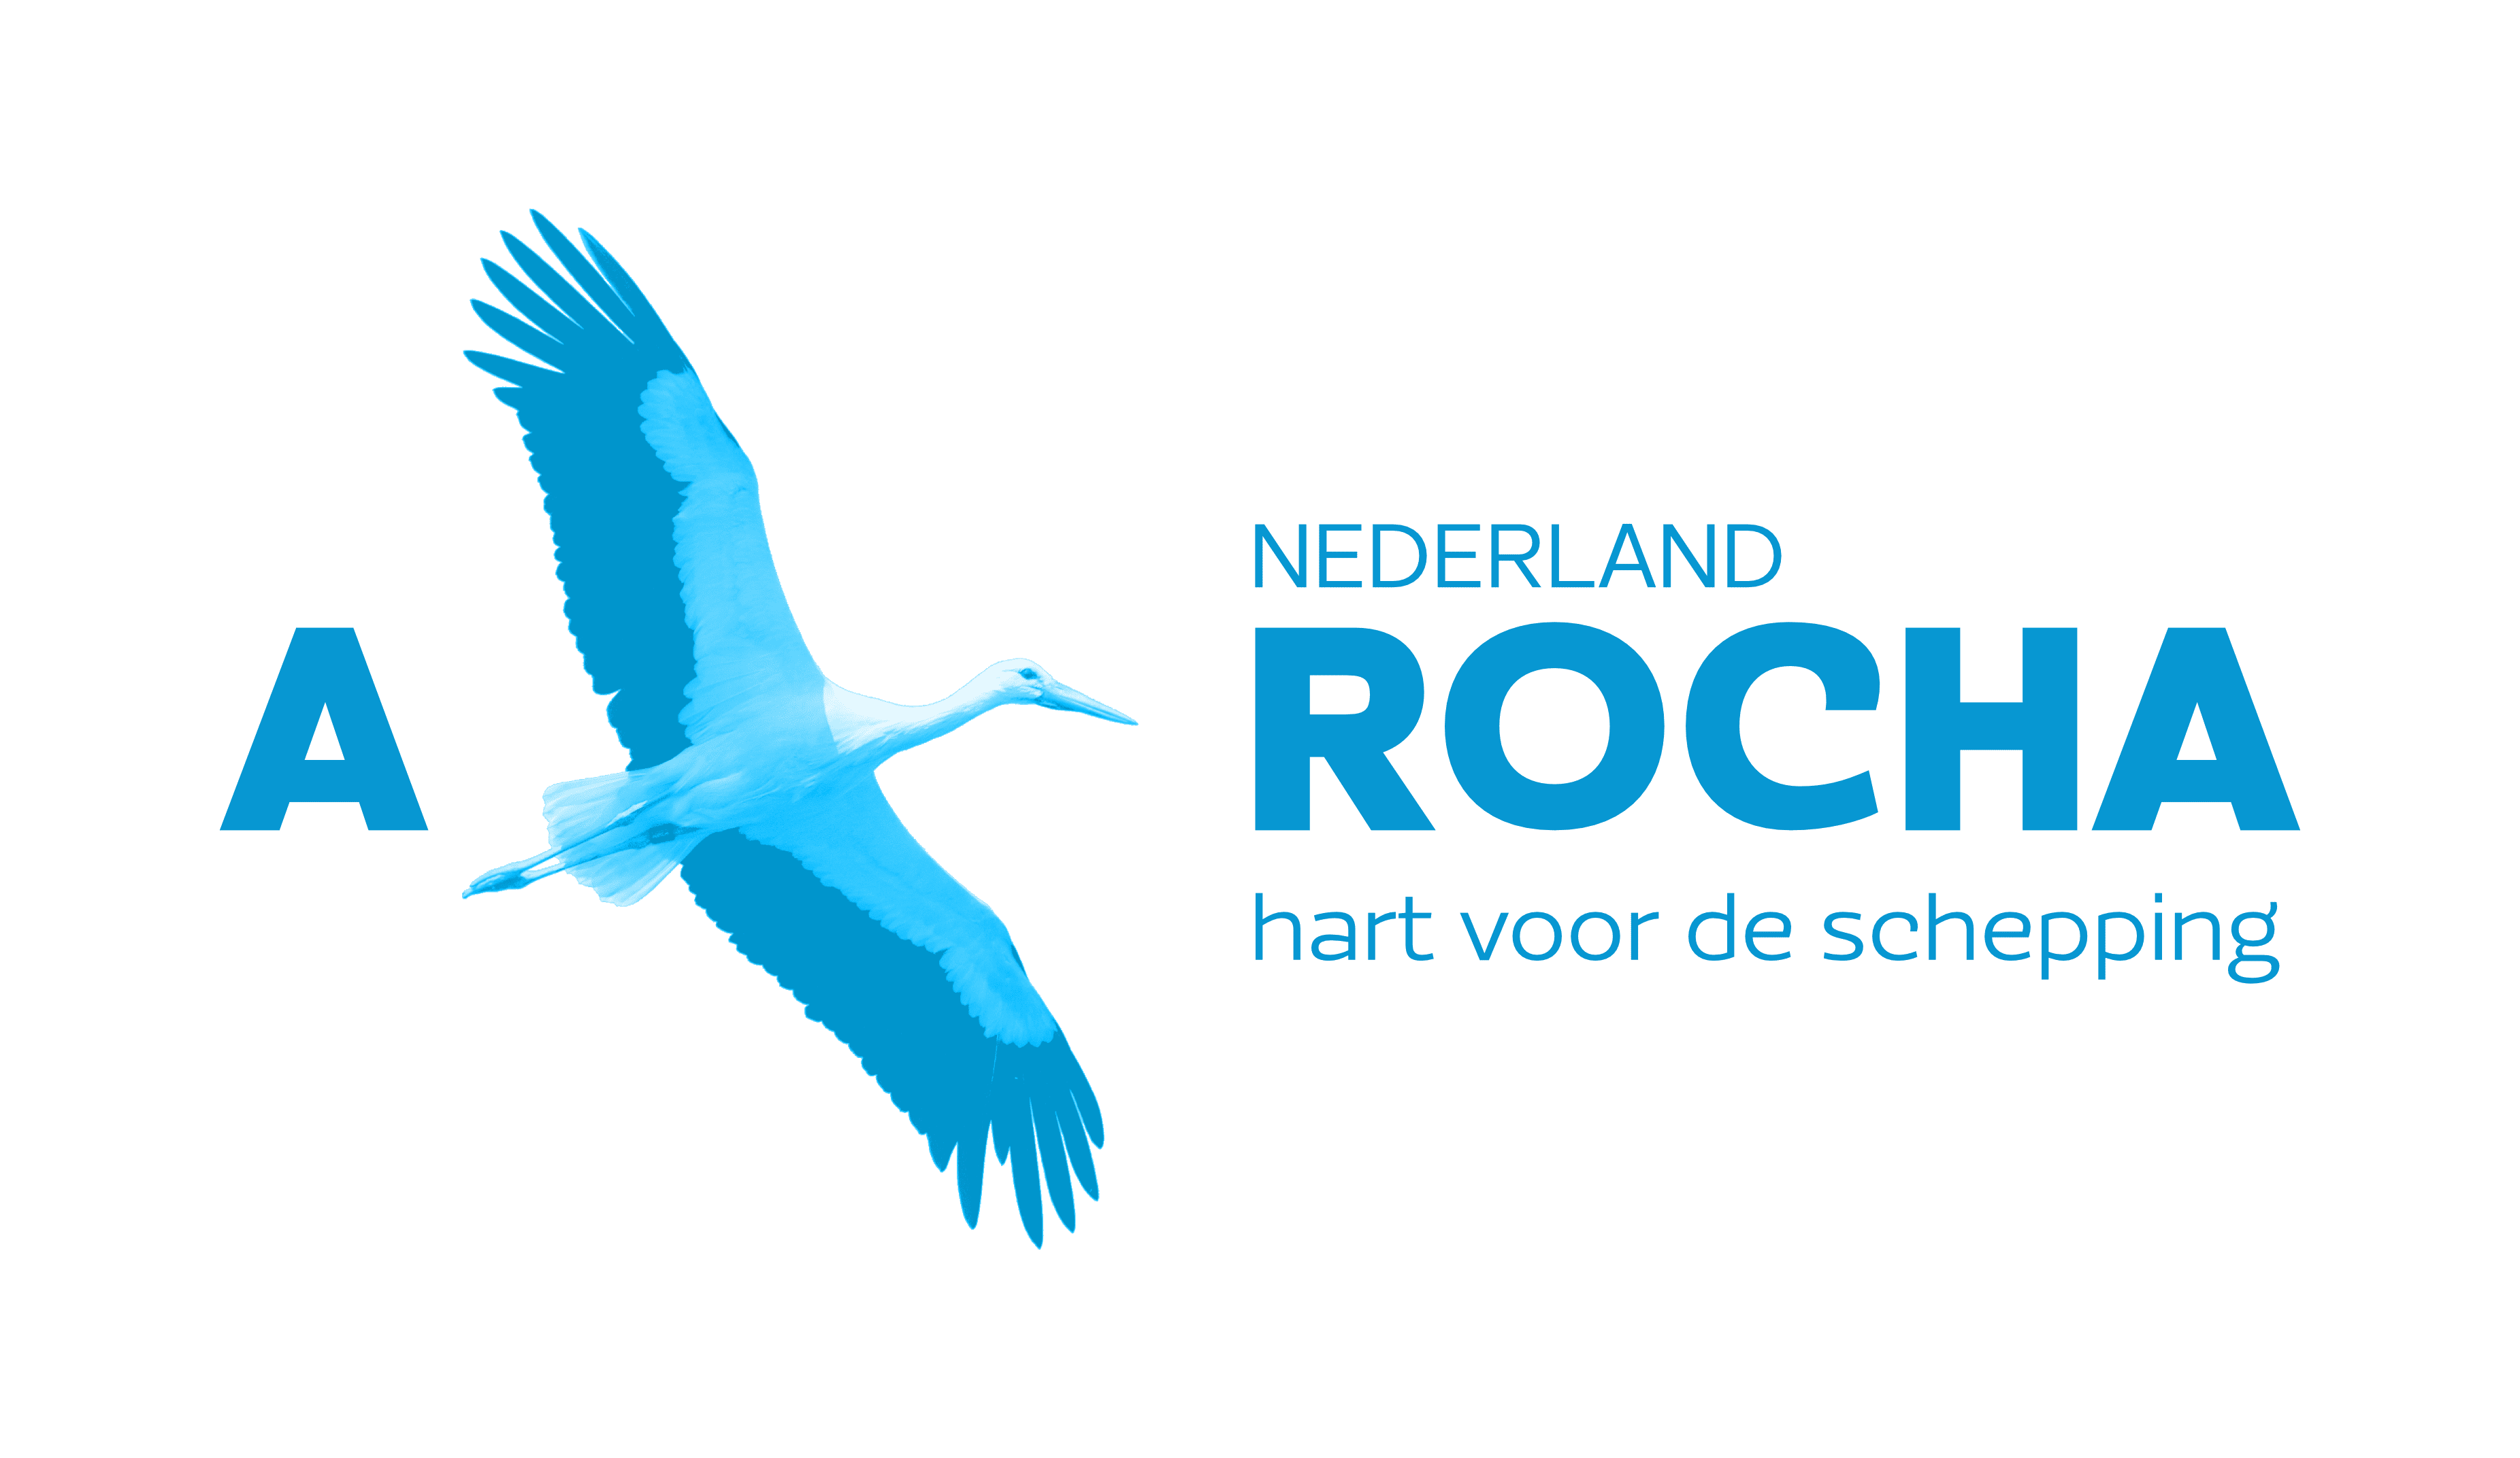 NL-stork-logo-blue.png